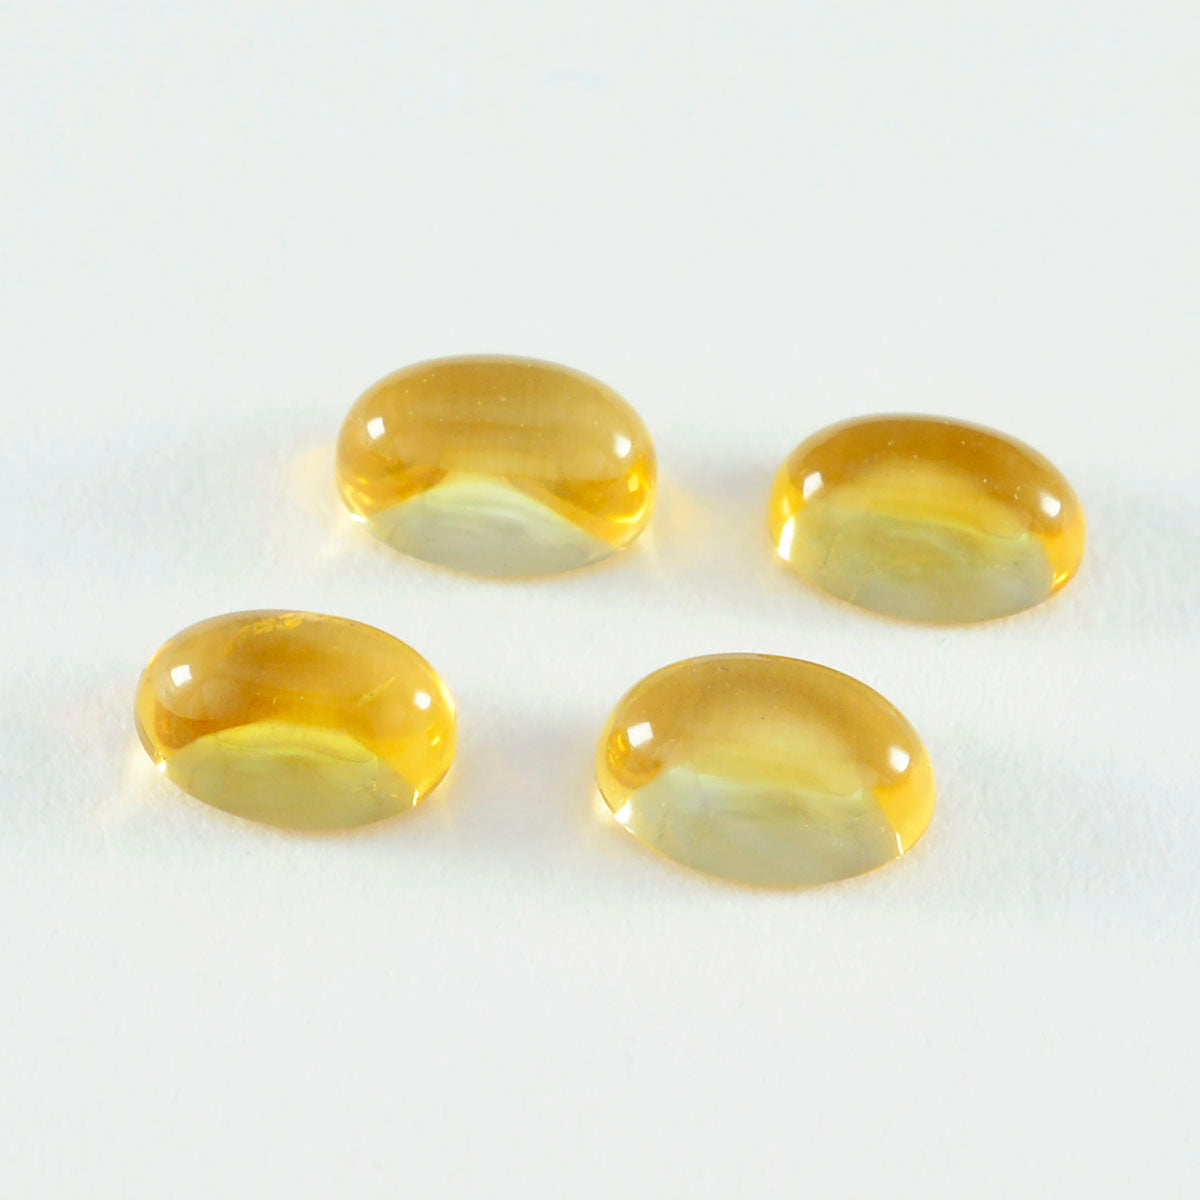 Riyogems 1 Stück gelber Citrin-Cabochon, 7 x 9 mm, ovale Form, gut aussehende Qualitäts-Edelsteine